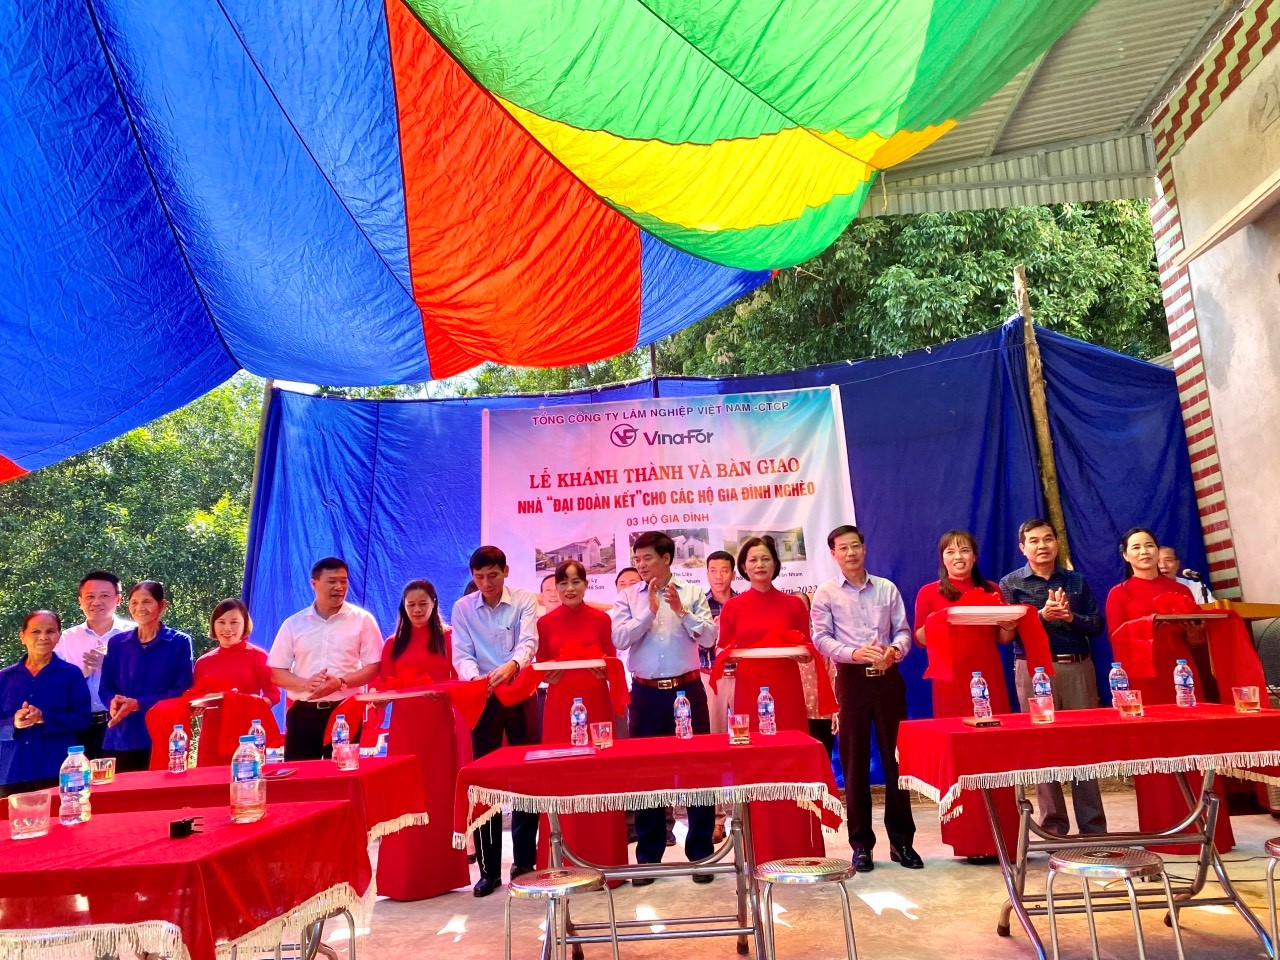 Tổng công ty lâm nghiệp Việt Nam - CTCP hỗ trợ kinh phí xây dựng nhà Đại đoàn kết cho các hộ nghèo, gia đình chính sách trên địa bàn tỉnh Lạng Sơn